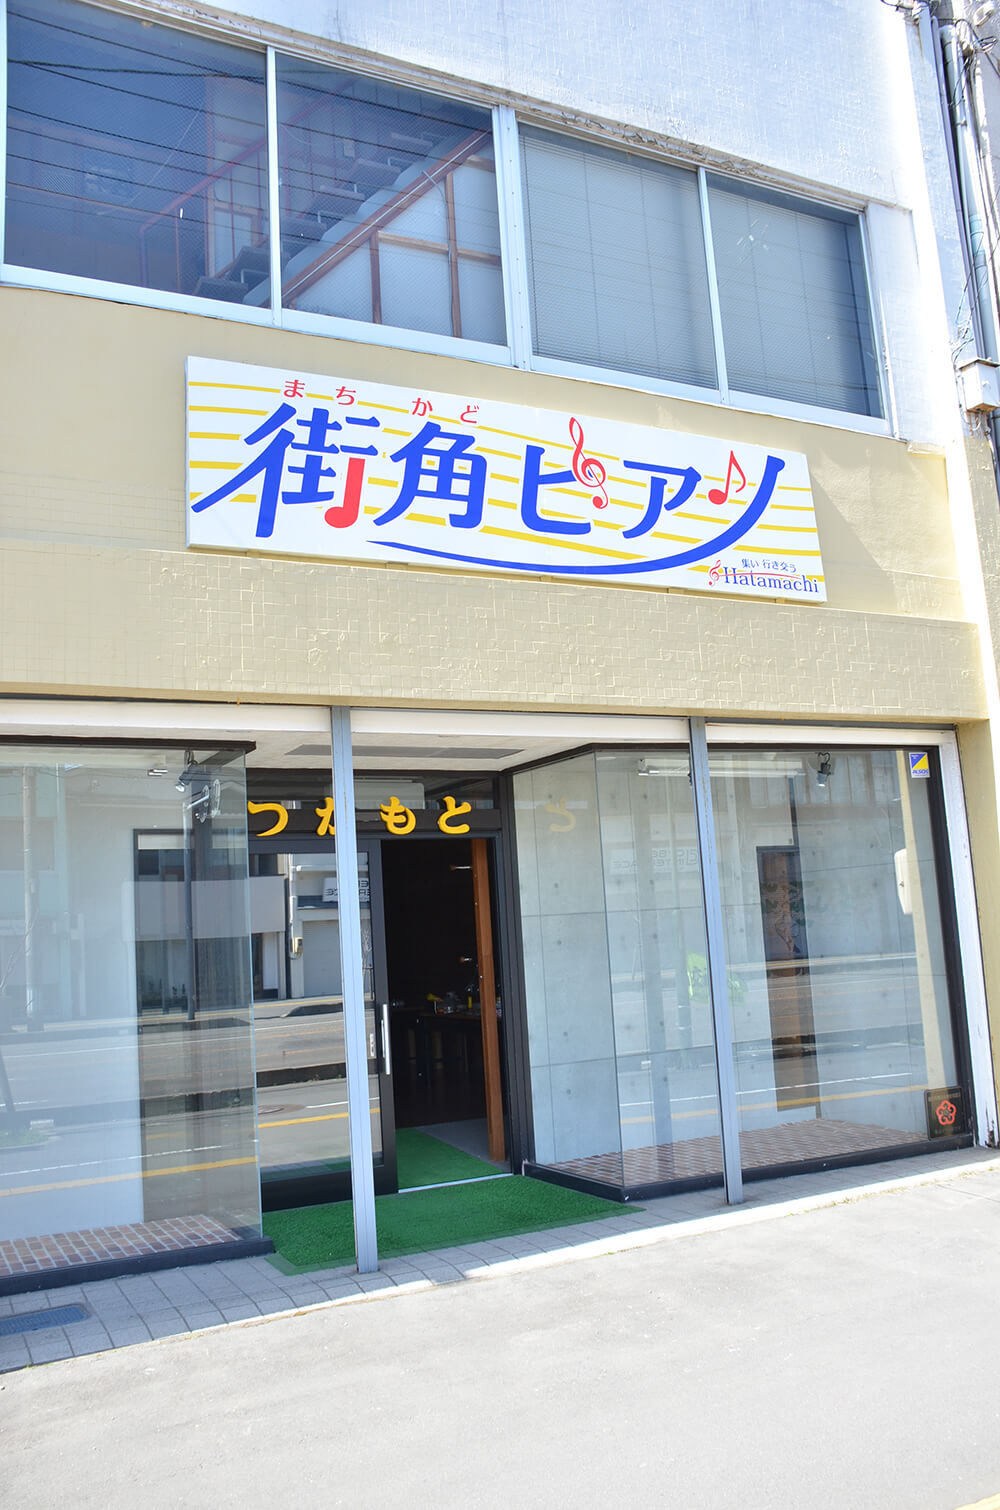 能代市畠町通りの空き店舗がストリートピアノを演奏できる場所になる